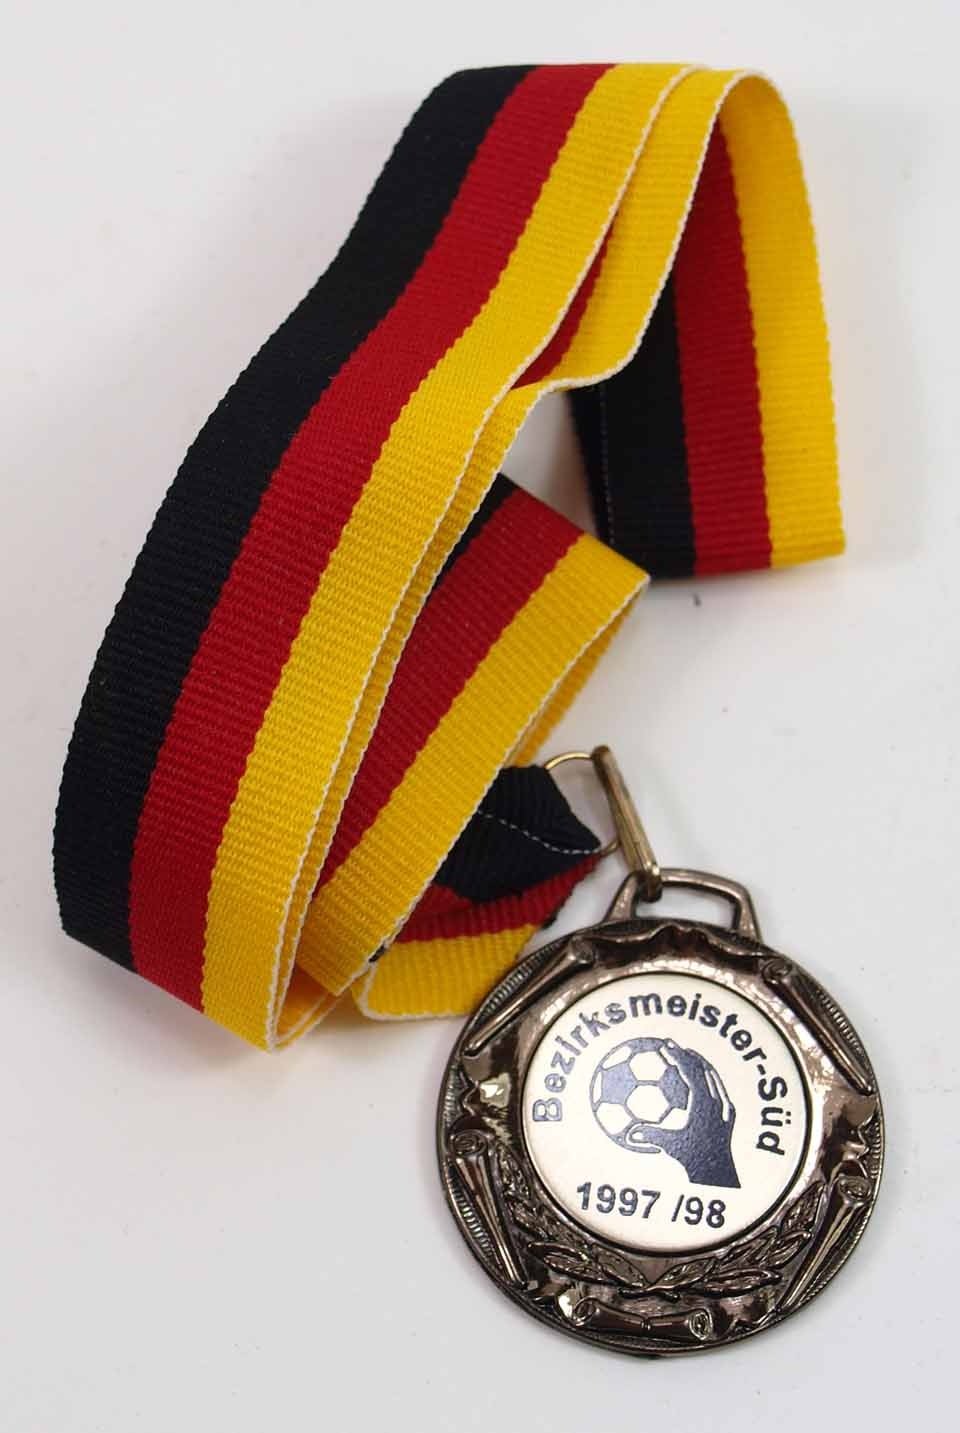 Bronzemedaille der Bezirksmeisterschaft Süd 1997/98 (Museum Weißenfels - Schloss Neu-Augustusburg CC BY-NC-SA)